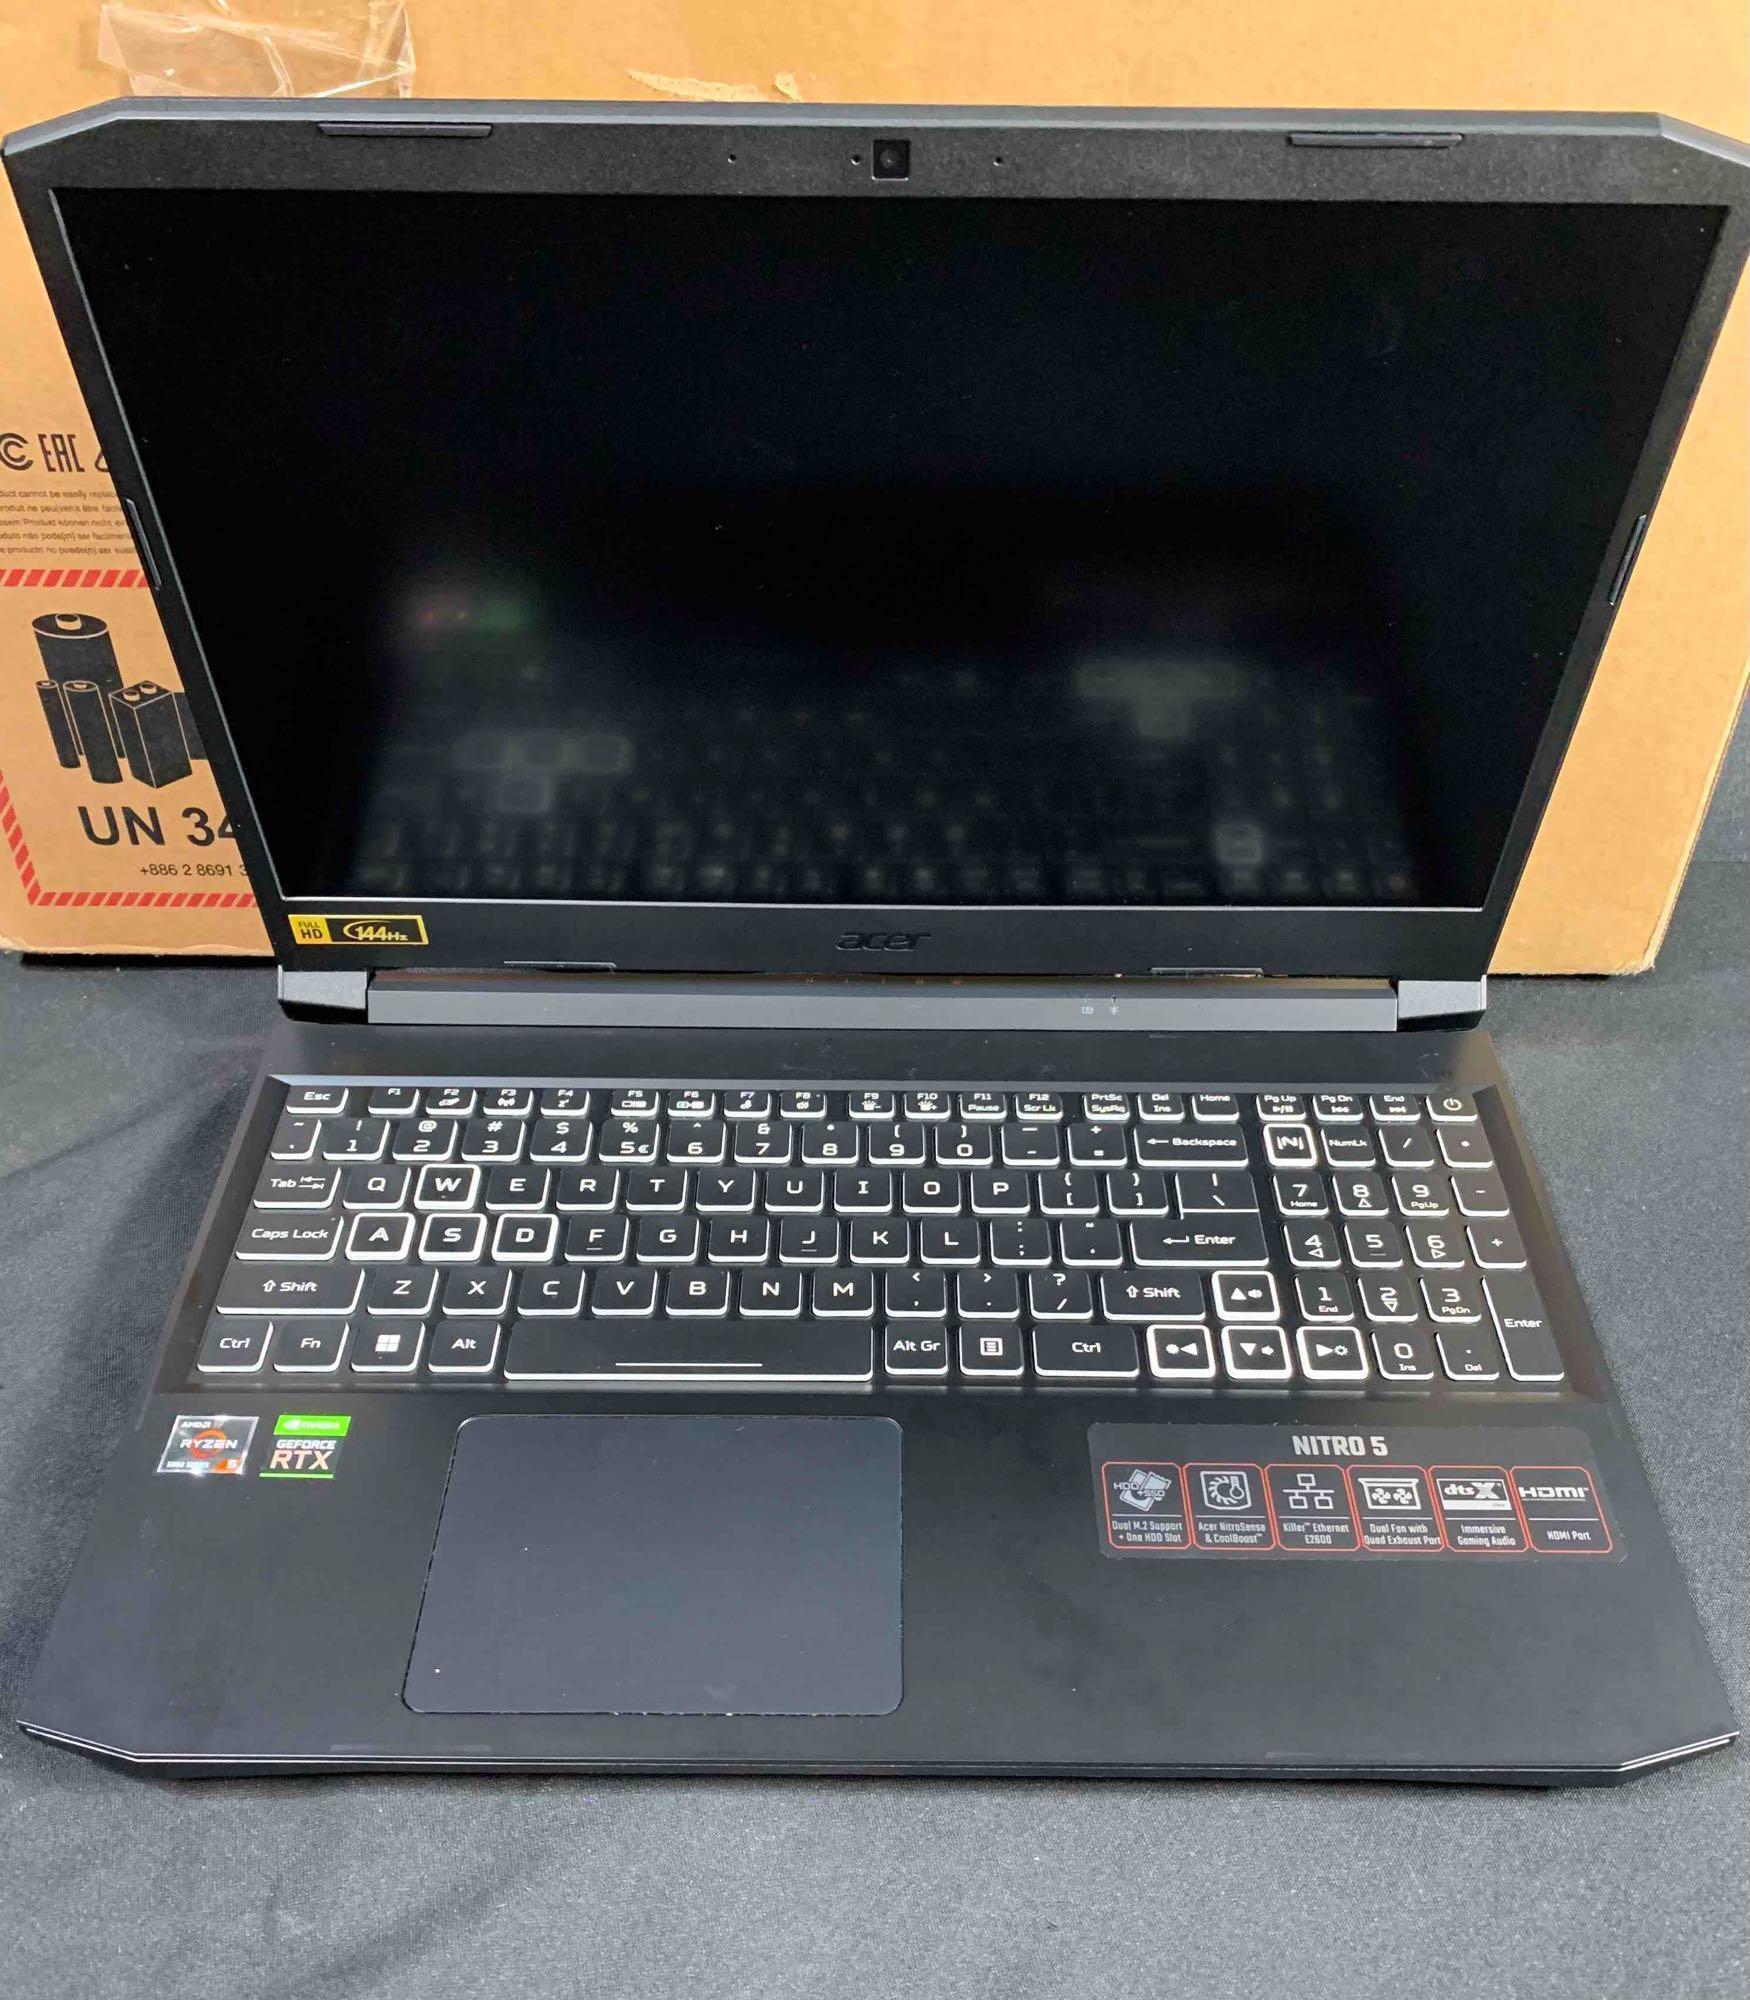 Acer Nitro 5 AN515-58-525P Gaming Laptop 512GB